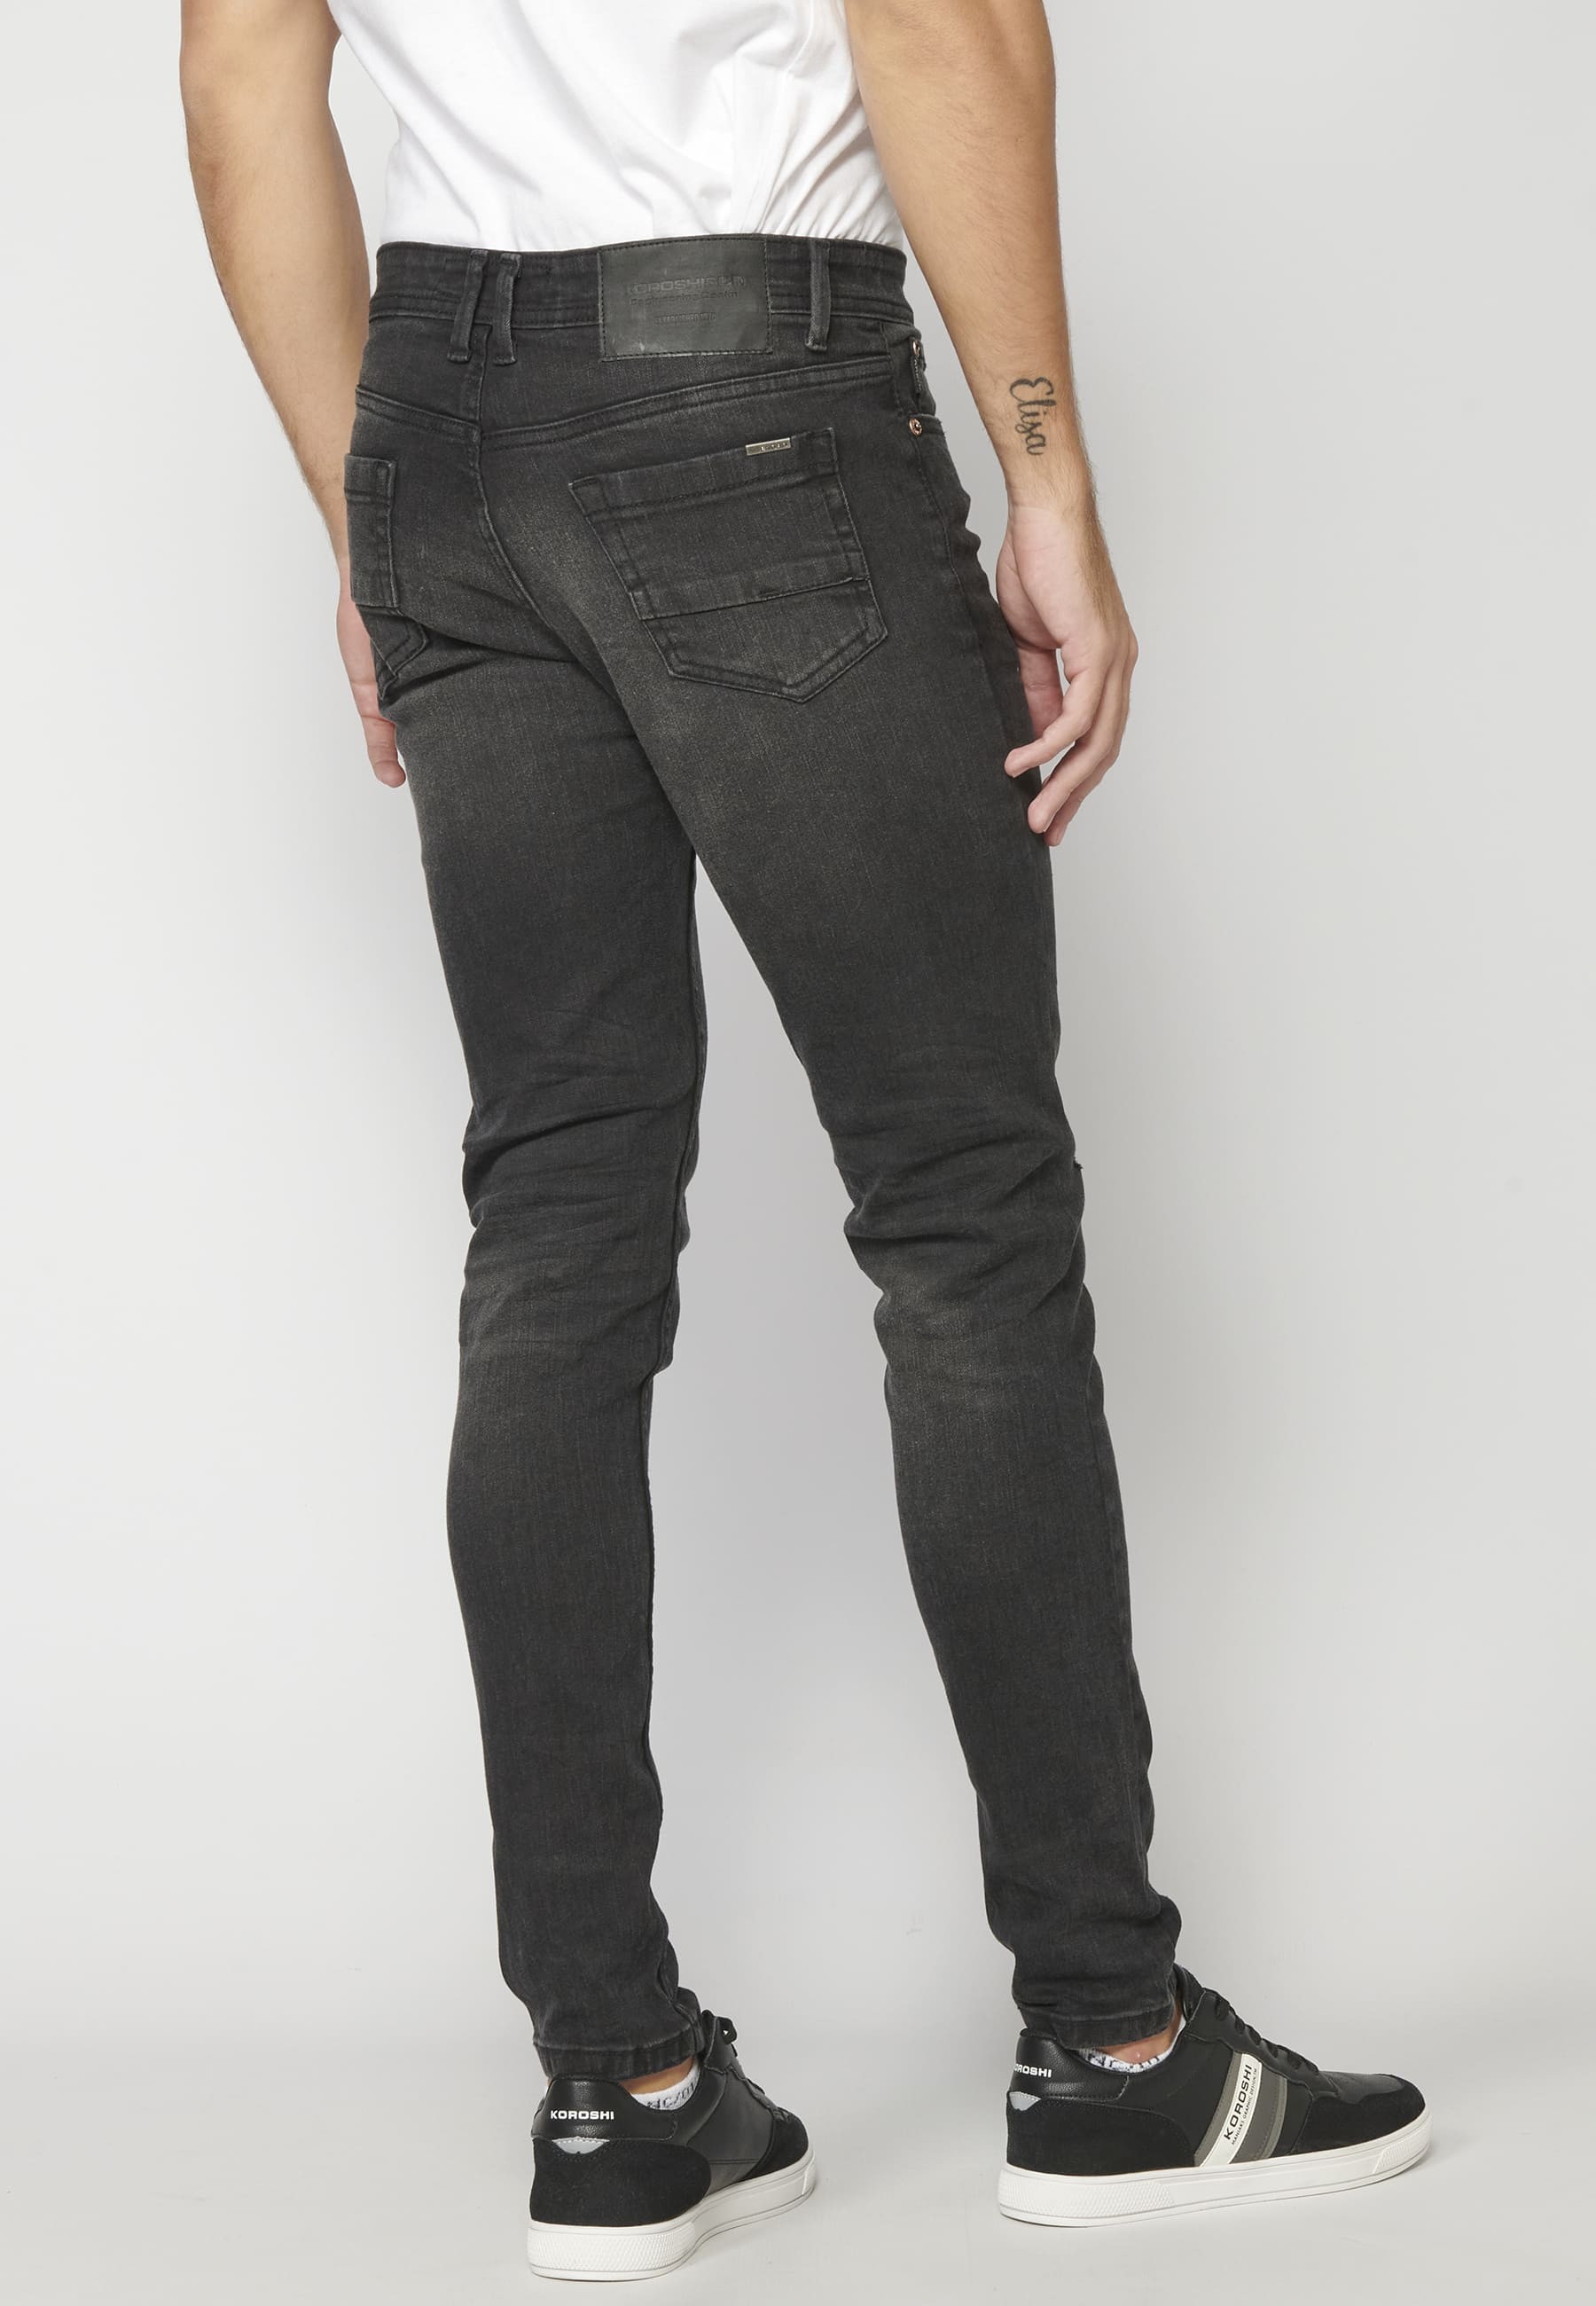 Pantalon en jean super skinny noir pour homme